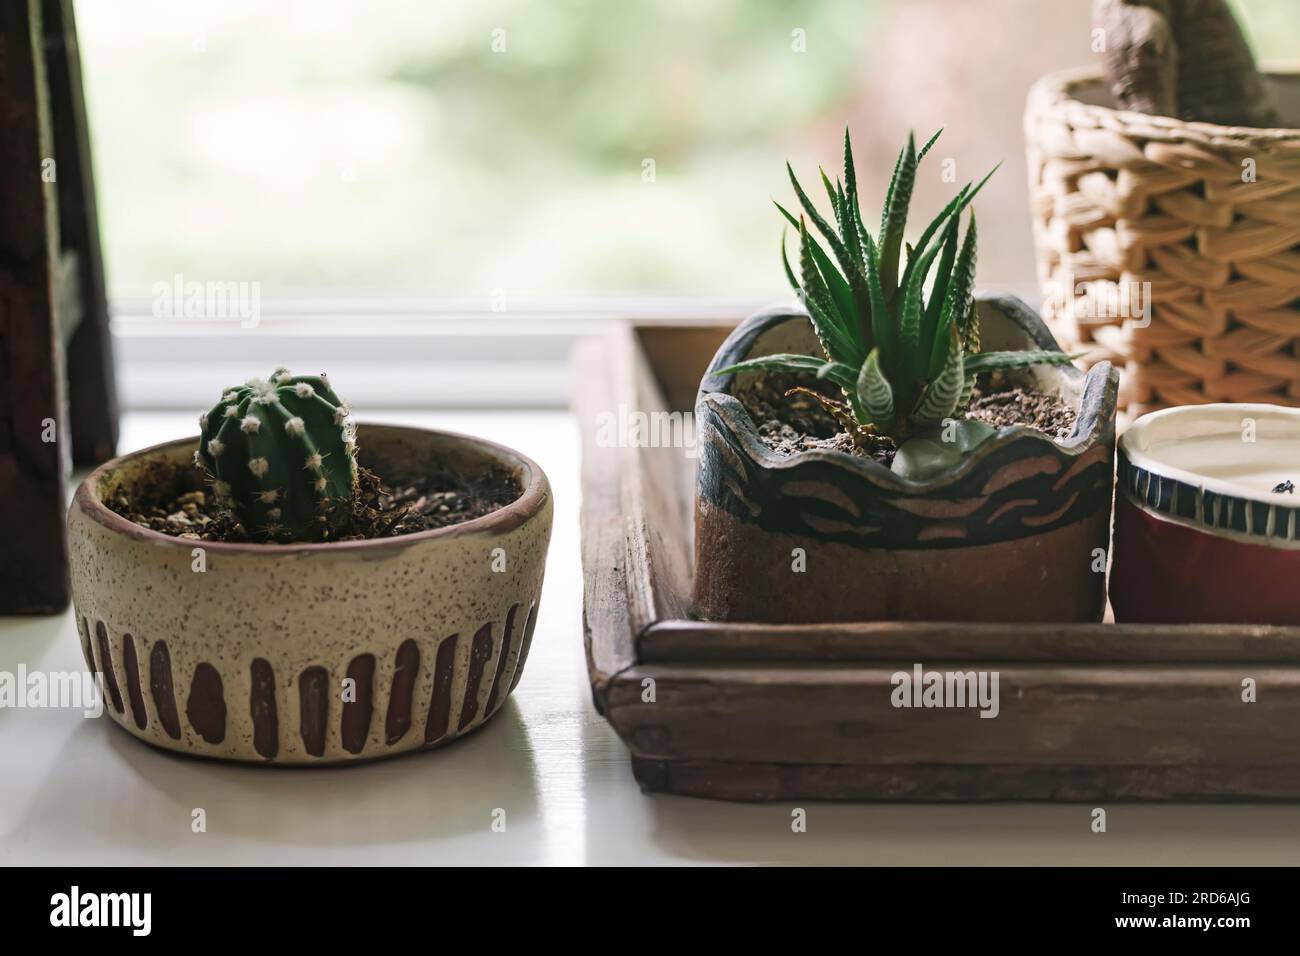 Gros plan de cactus et succulentes dans de petits pots sur le rebord de la fenêtre Banque D'Images